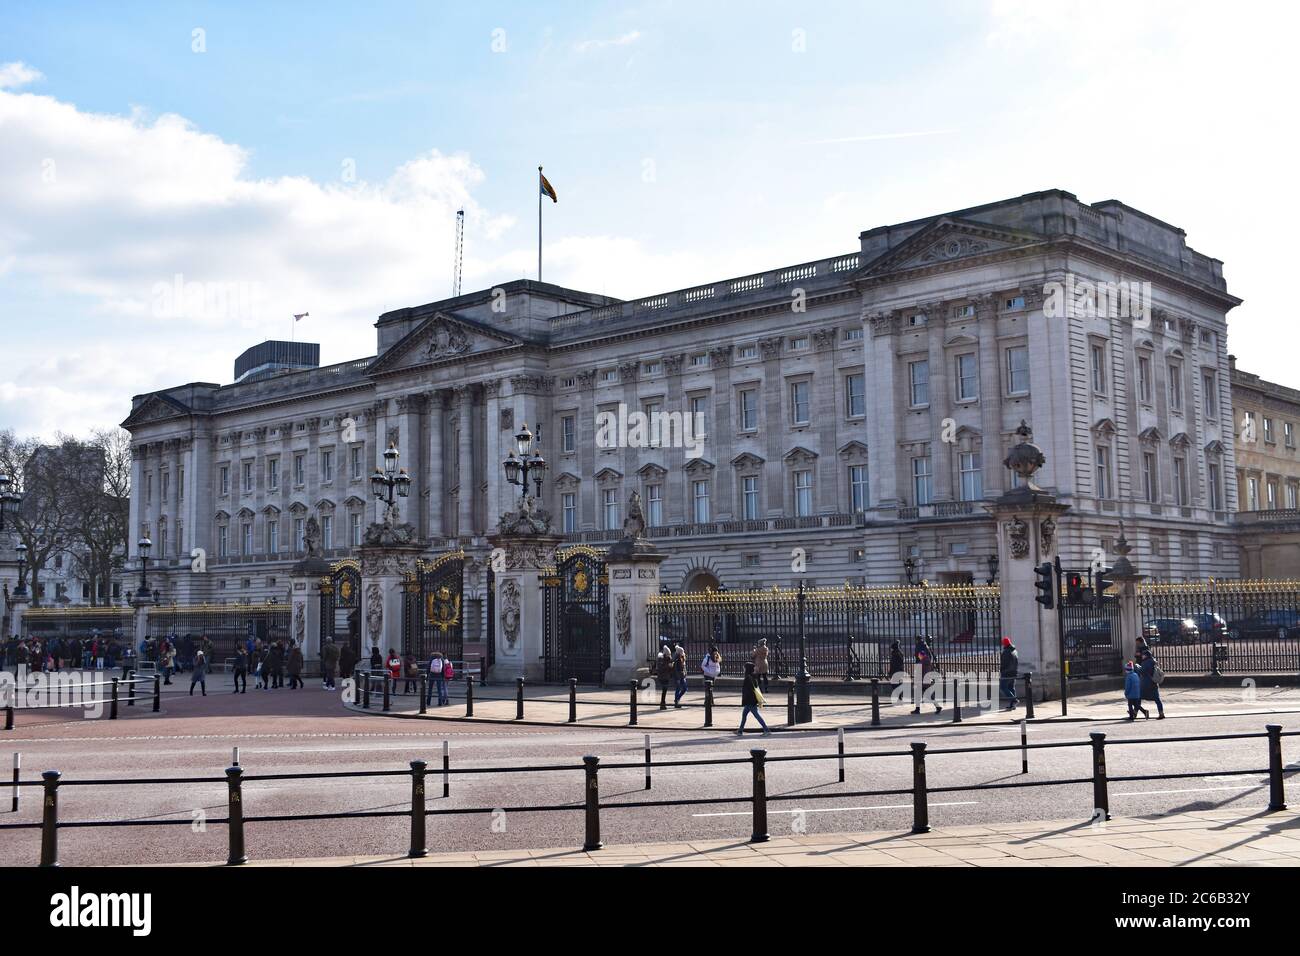 Alcuni turisti e visitatori camminano oltre le ornate ringhiere nere e dorate di Buckingham Palace. La bandiera è stata fatta volare a pieno albero sopra il palazzo. Foto Stock